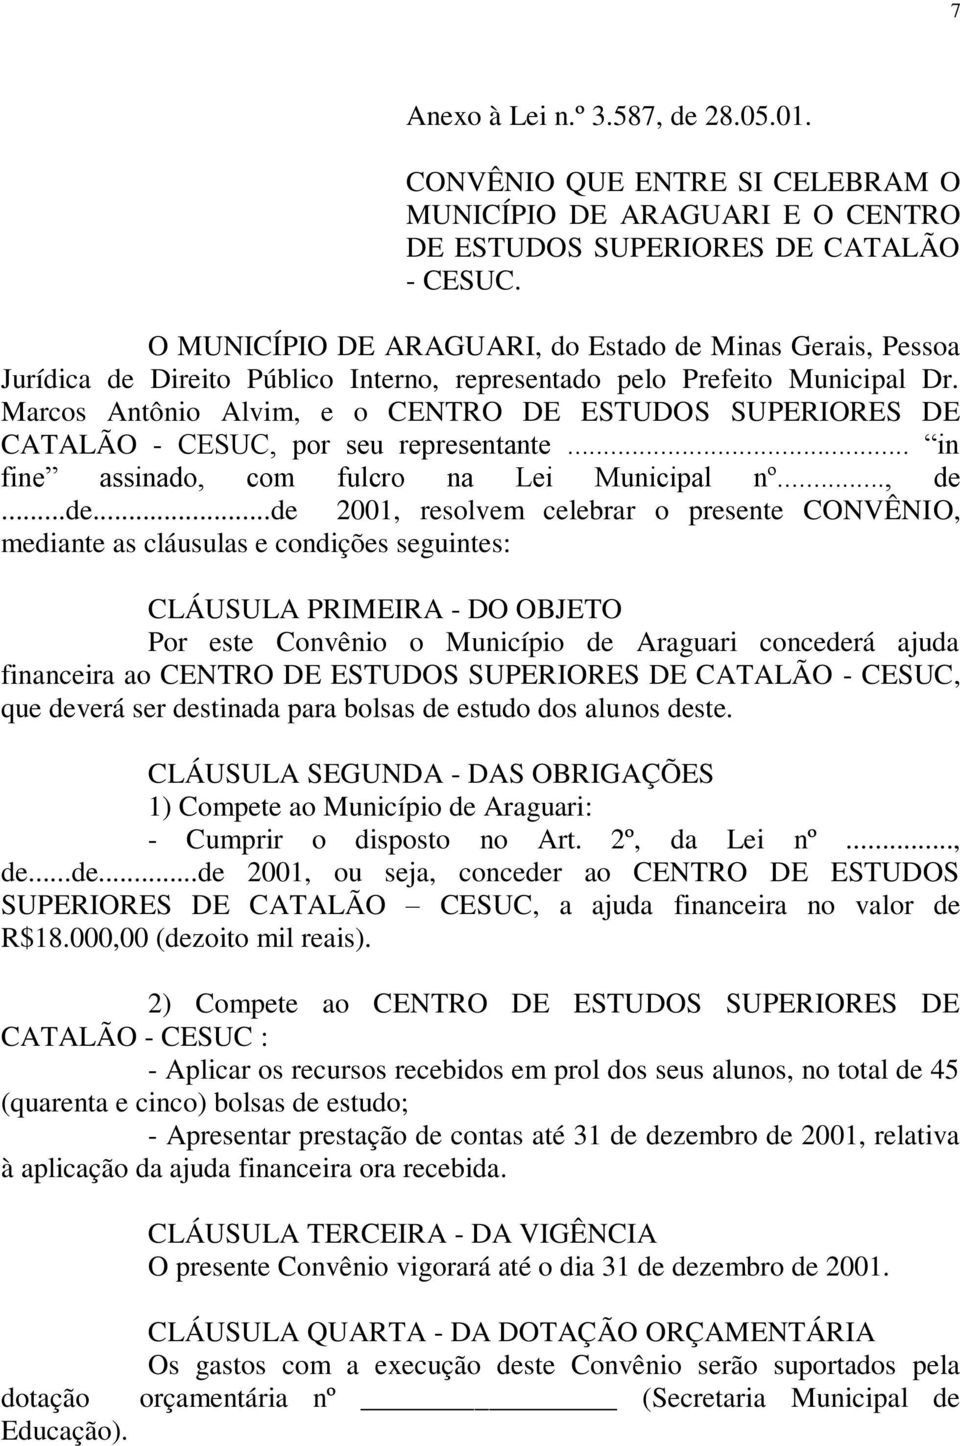 Marcos Antônio Alvim, e o CENTRO DE ESTUDOS SUPERIORES DE CATALÃO - CESUC, por seu representante... in fine assinado, com fulcro na Lei Municipal nº..., de.